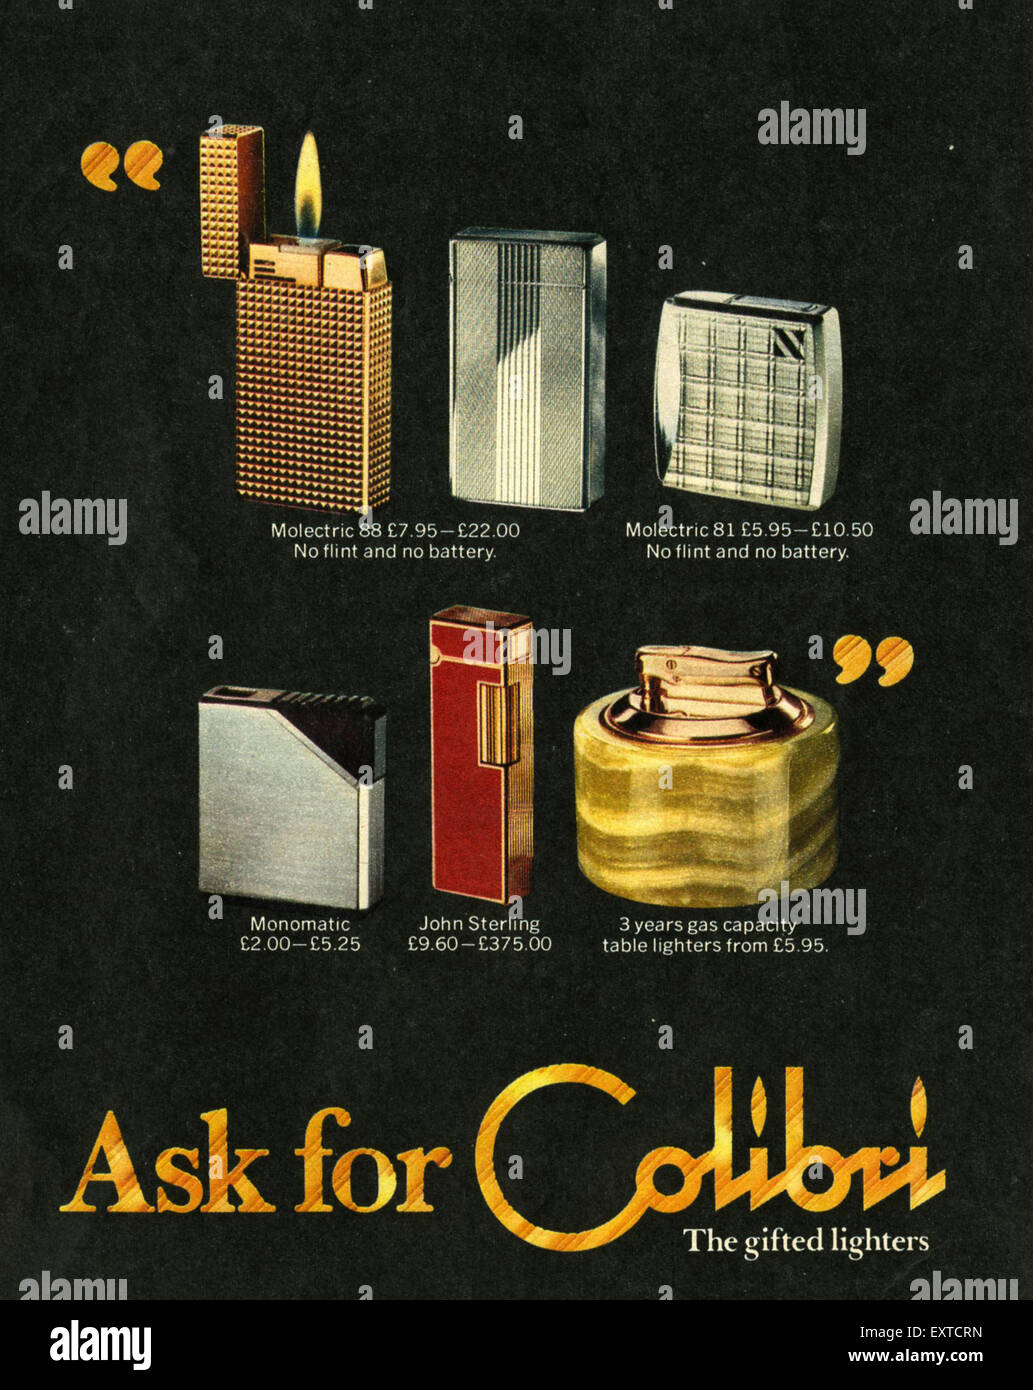 Colibri Lighters Banque d'image et photos - Alamy